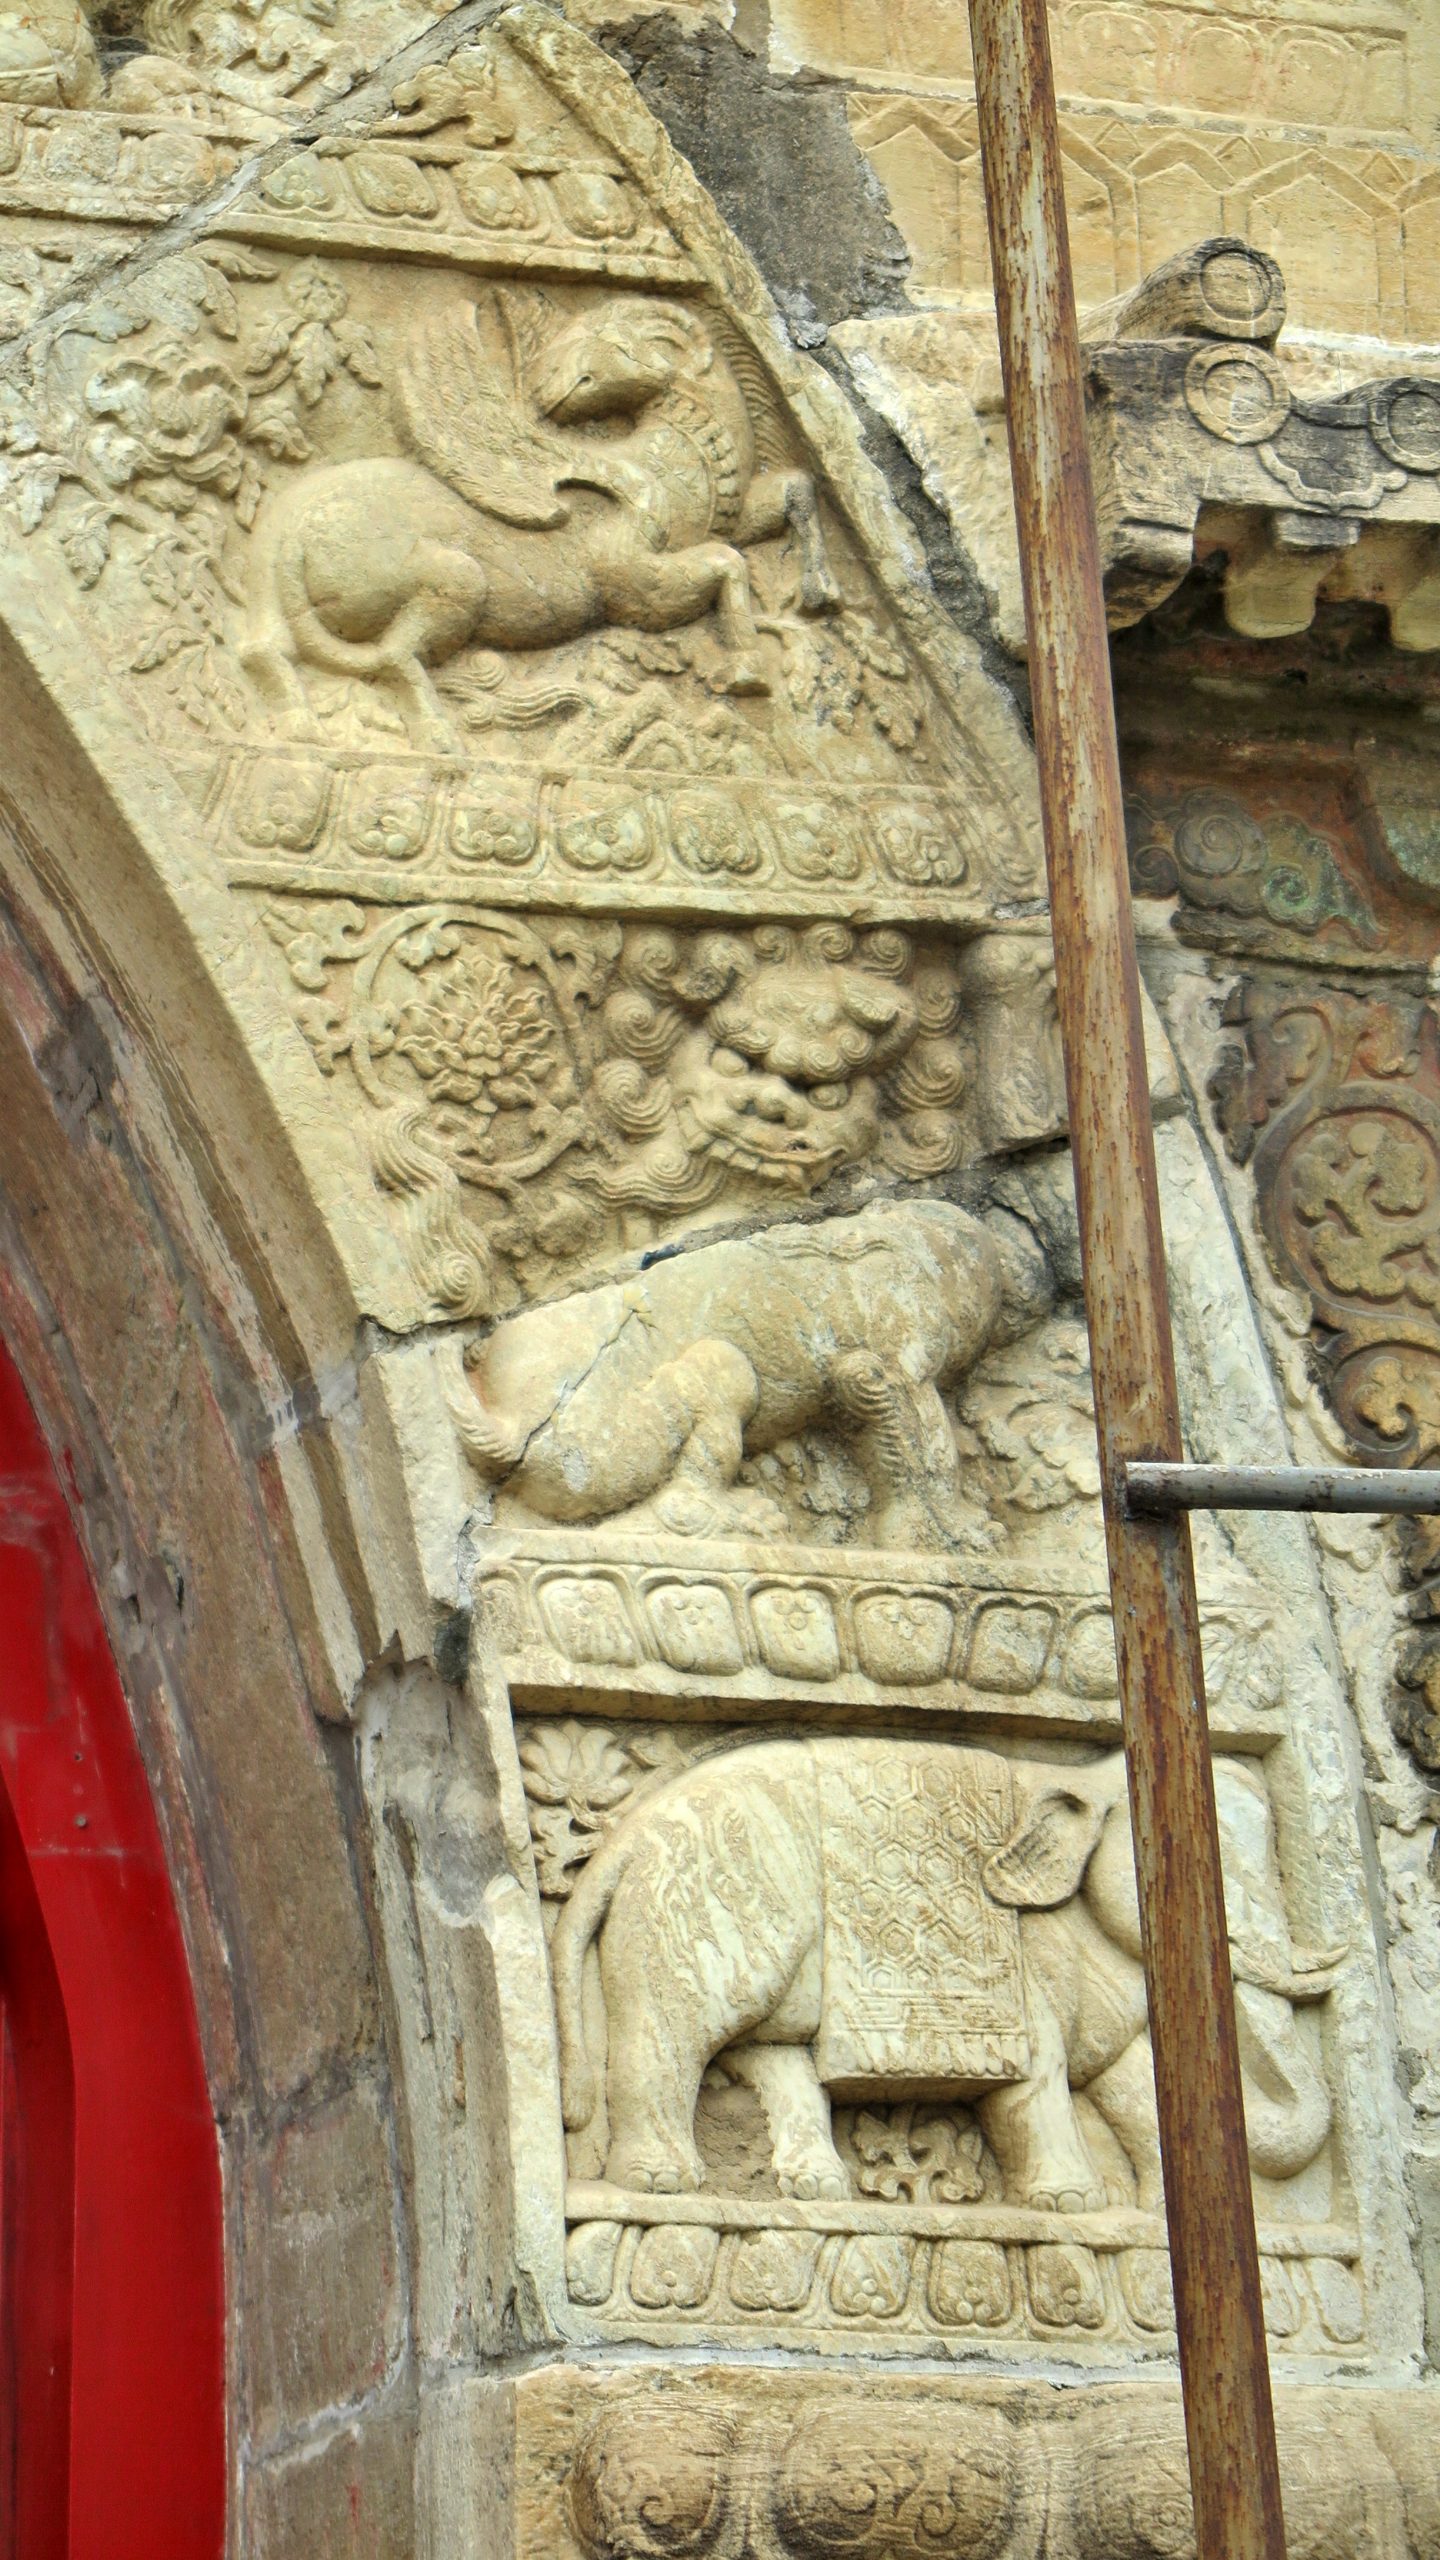 拱门券面上刻有金翅鸟、狮、象、孔雀、飞羊等图饰。